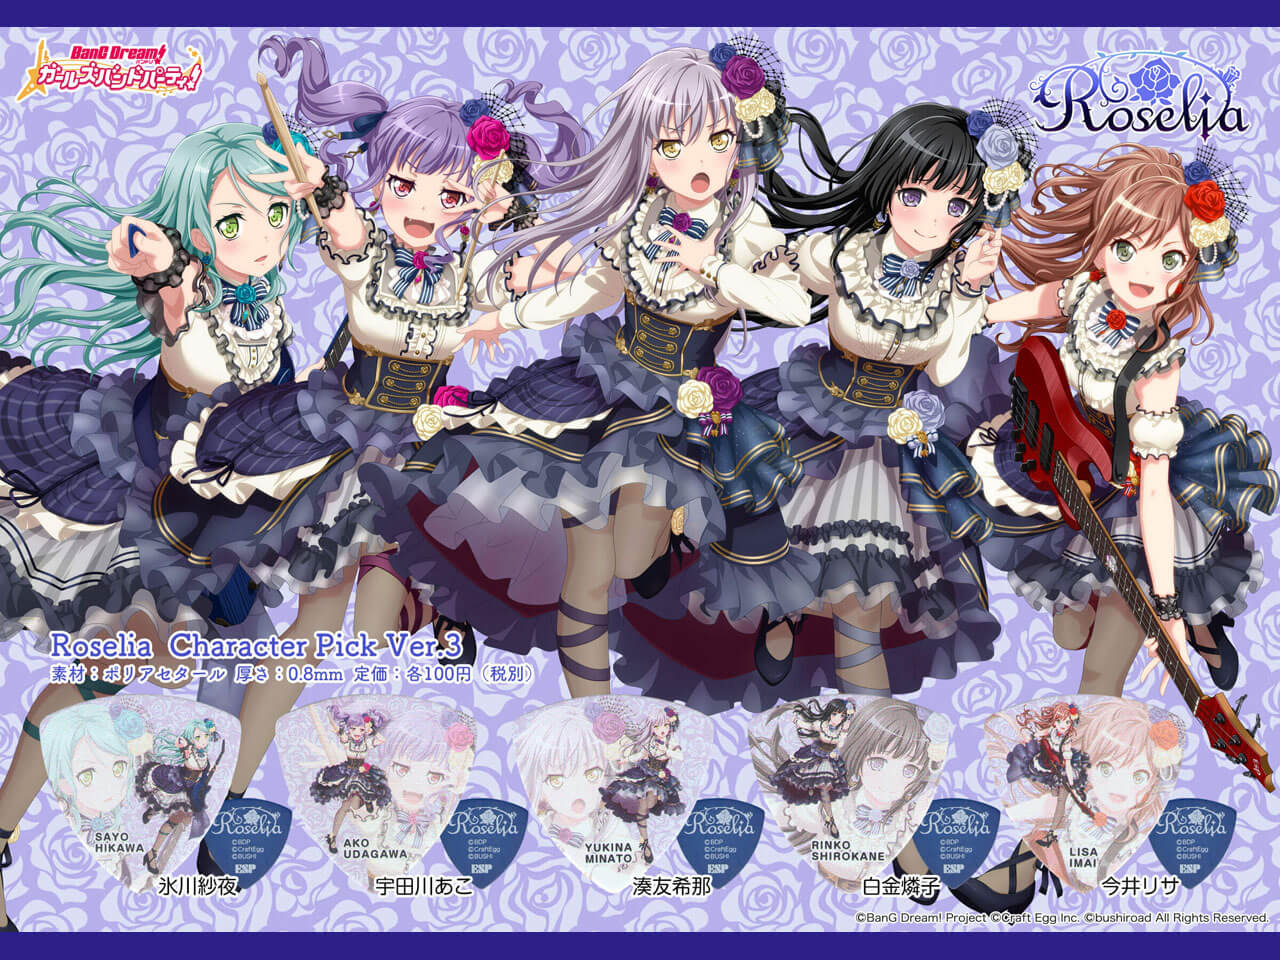 【ESP×BanG Dream!コラボピック】Roselia Character Pick Ver.3 "今井リサ"10枚セット（GBP Lisa Roselia 3）